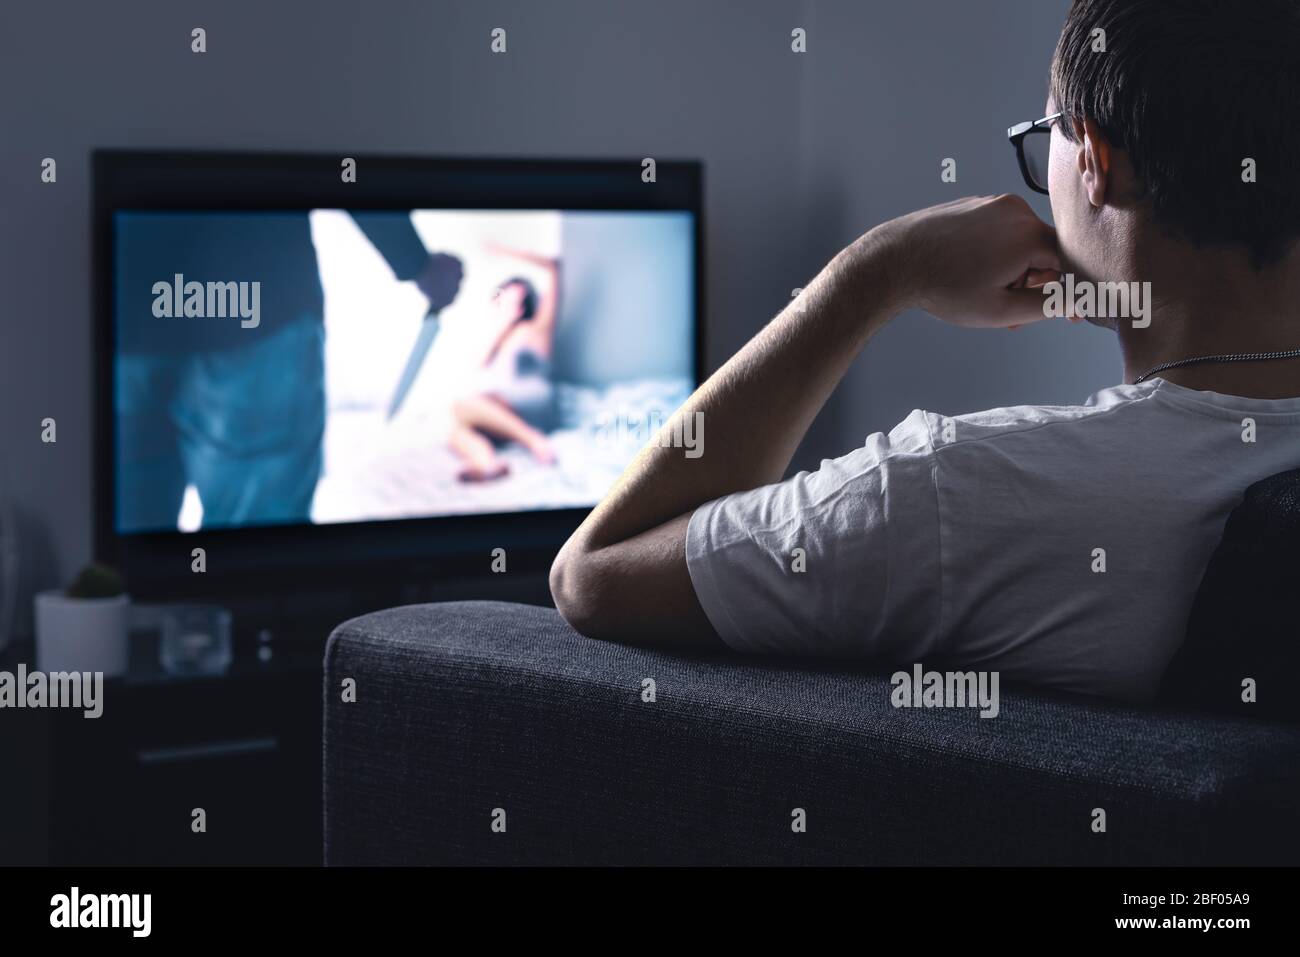 Film horror in streaming sulla tv. Uomo che guarda film o serie spaventosi in streaming online o servizio VOD in un salotto di casa oscuro di notte. Foto Stock